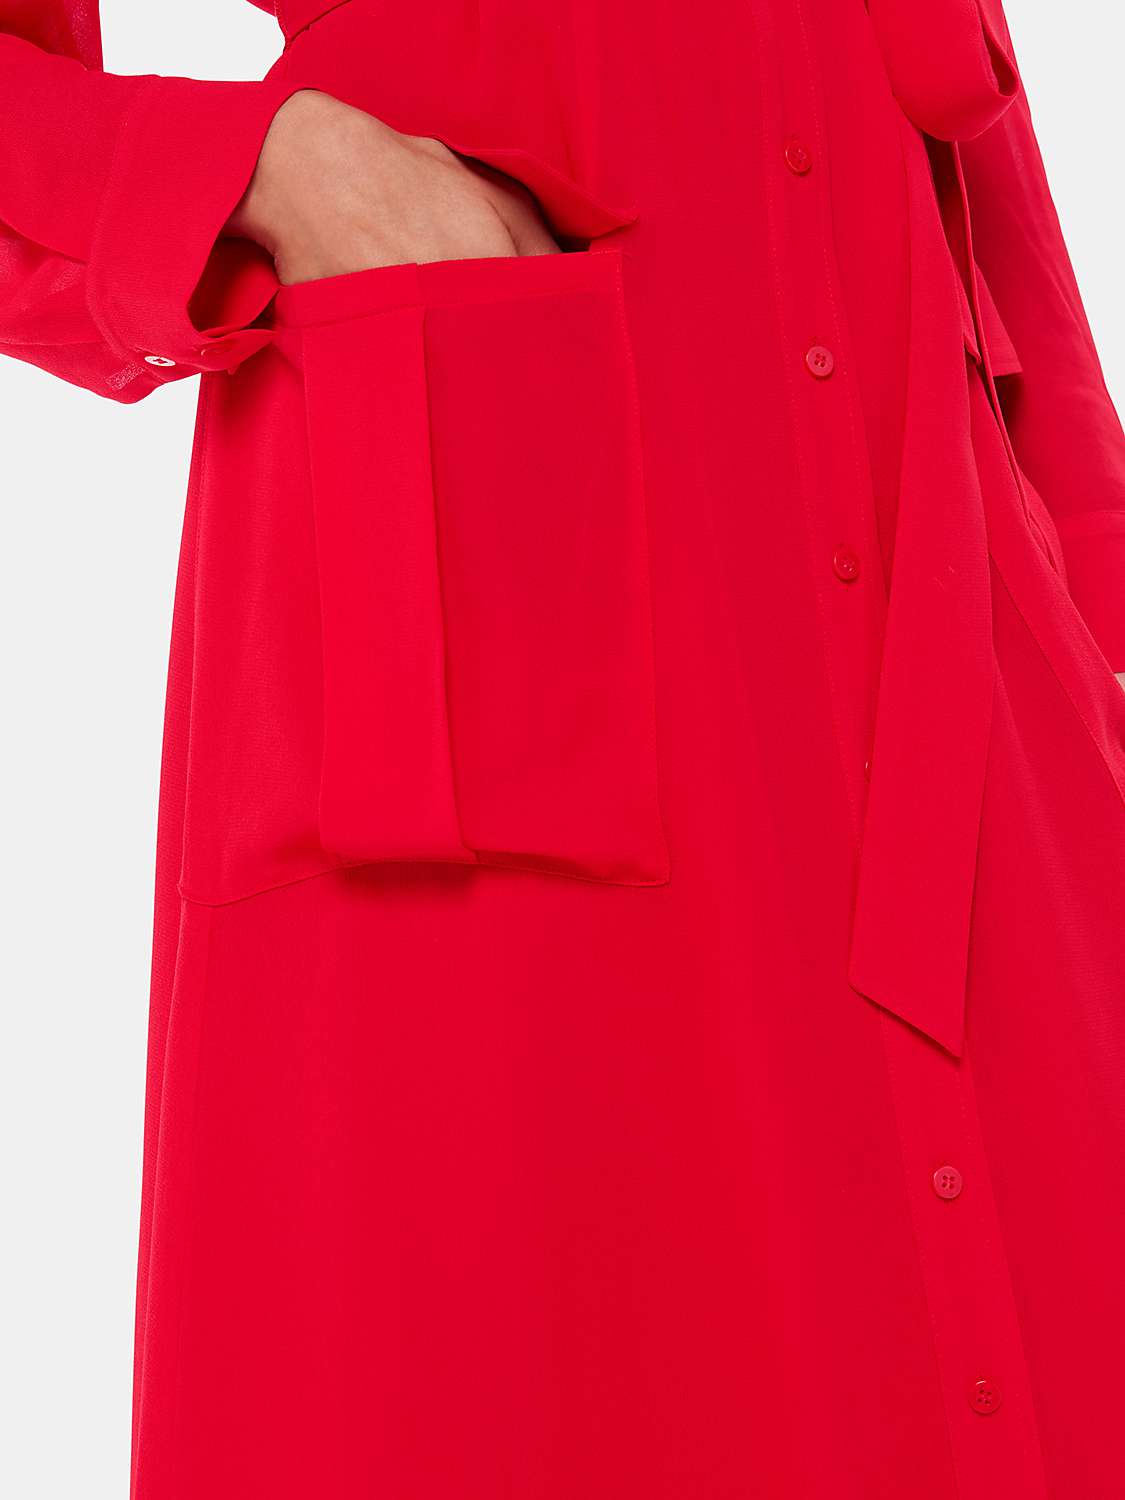 Buy Whistles Nia Pocket Detail Midi Shirt Dress, Red Online at johnlewis.com